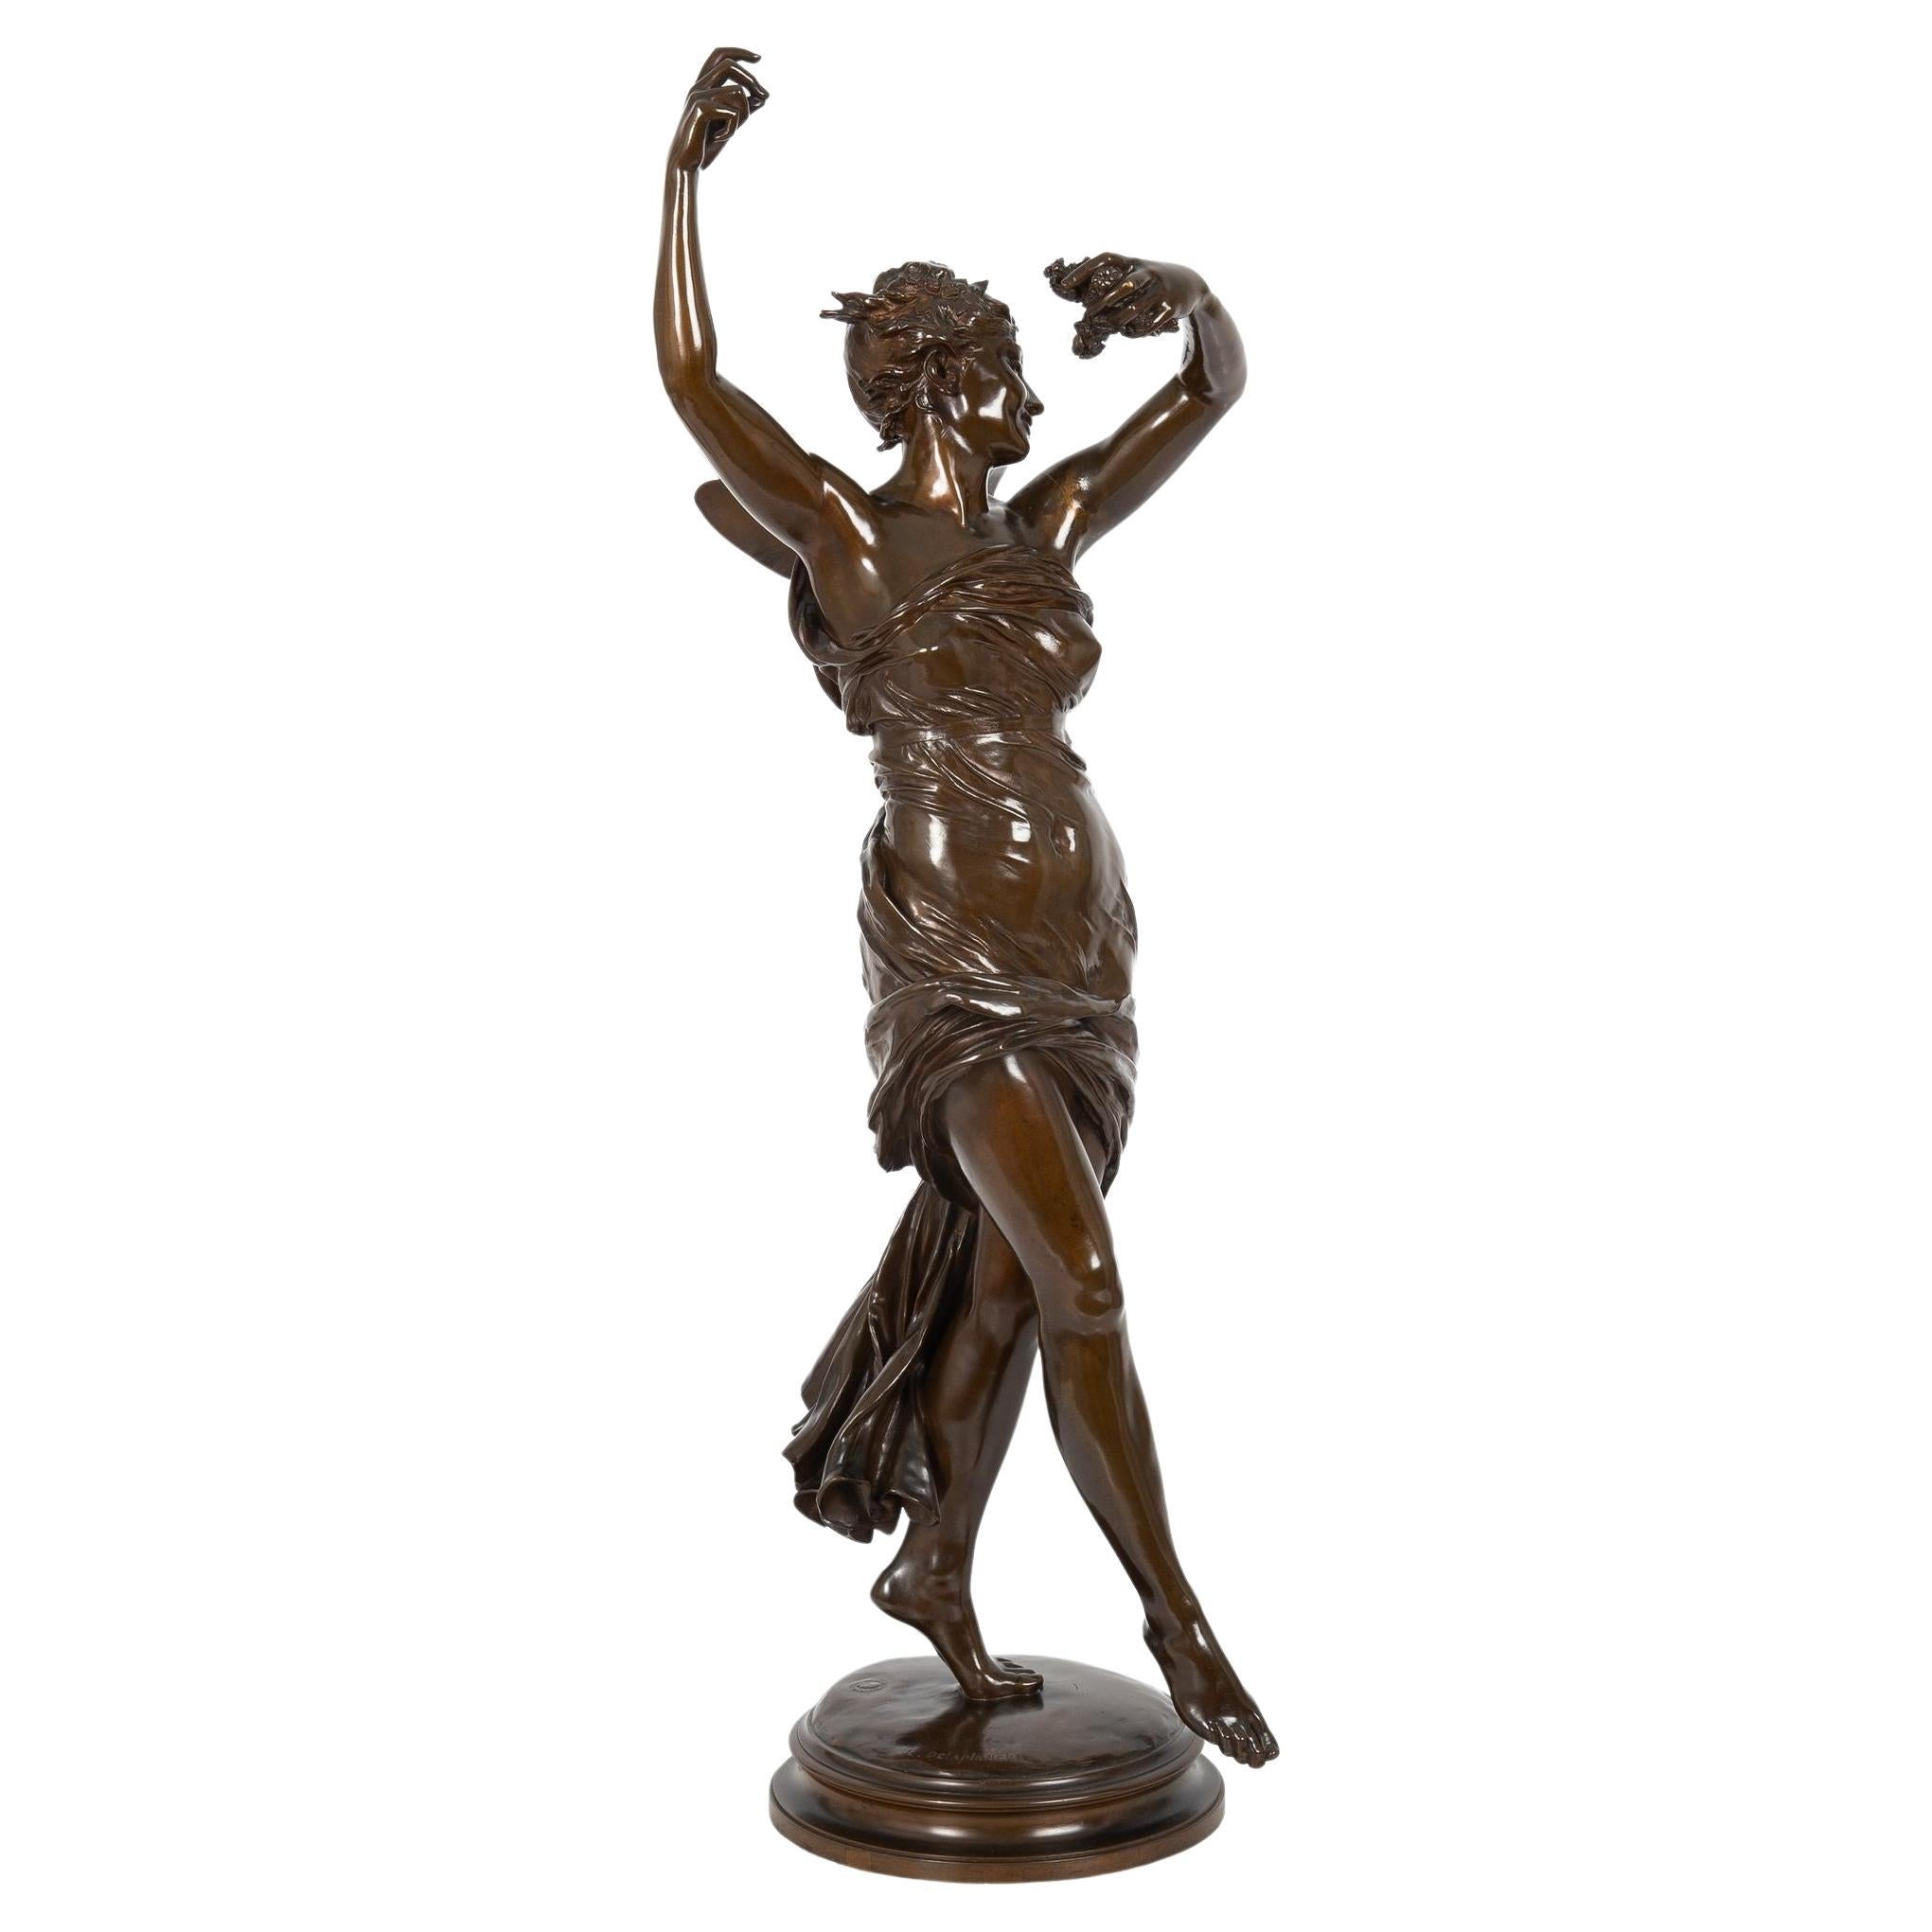 Antique Art Nouveau Bronze Sculpture of "La Danse" by Eugene Delaplanche